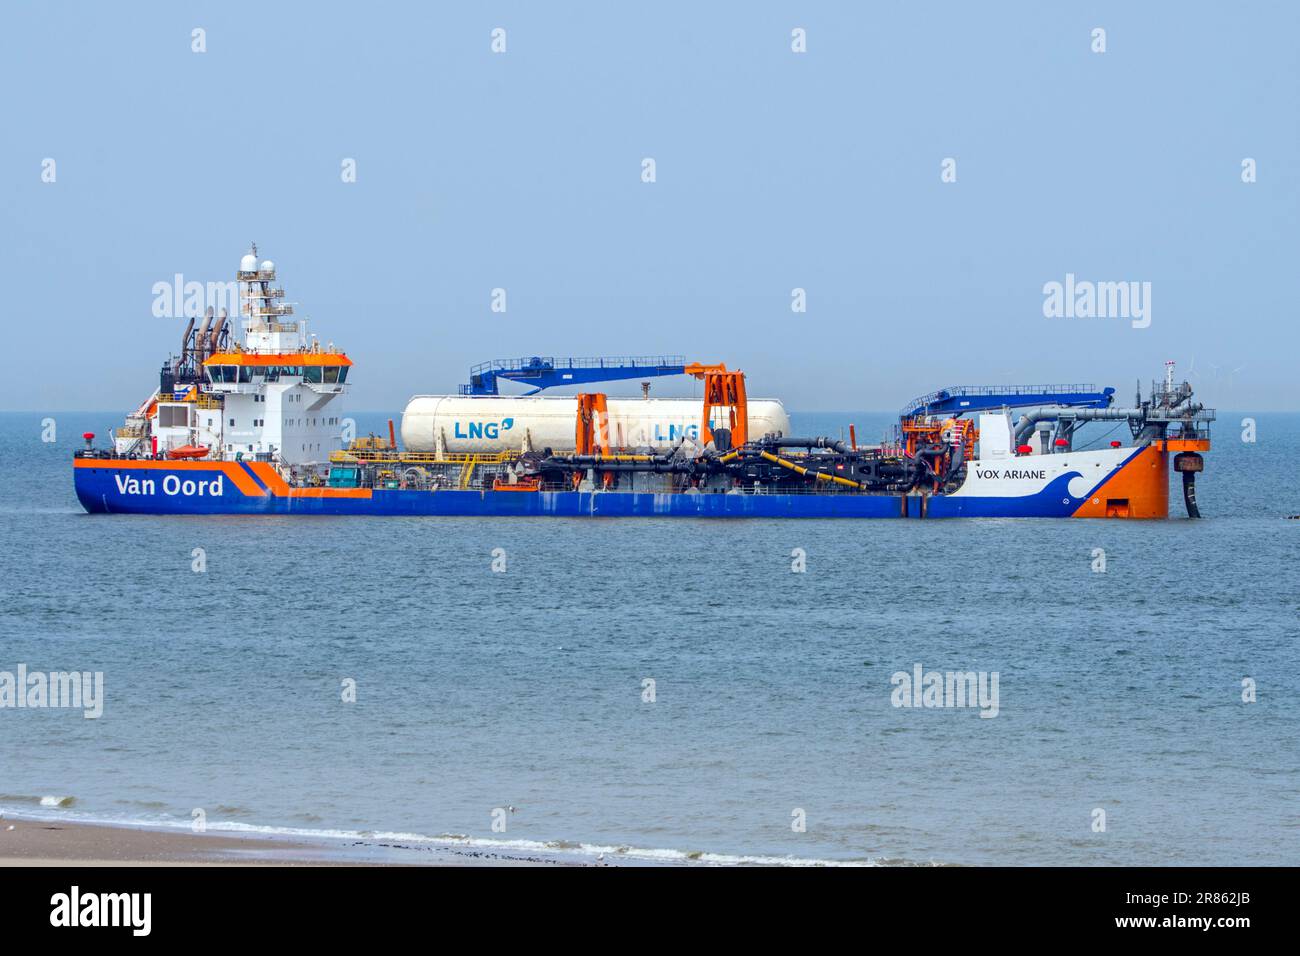 Nachlaufbagger Vox Ariane von Van Oord, niederländisches Seeverkehrsunternehmen, das auf Baggerarbeiten spezialisiert ist und an der Küste von Zeeland arbeitet Stockfoto